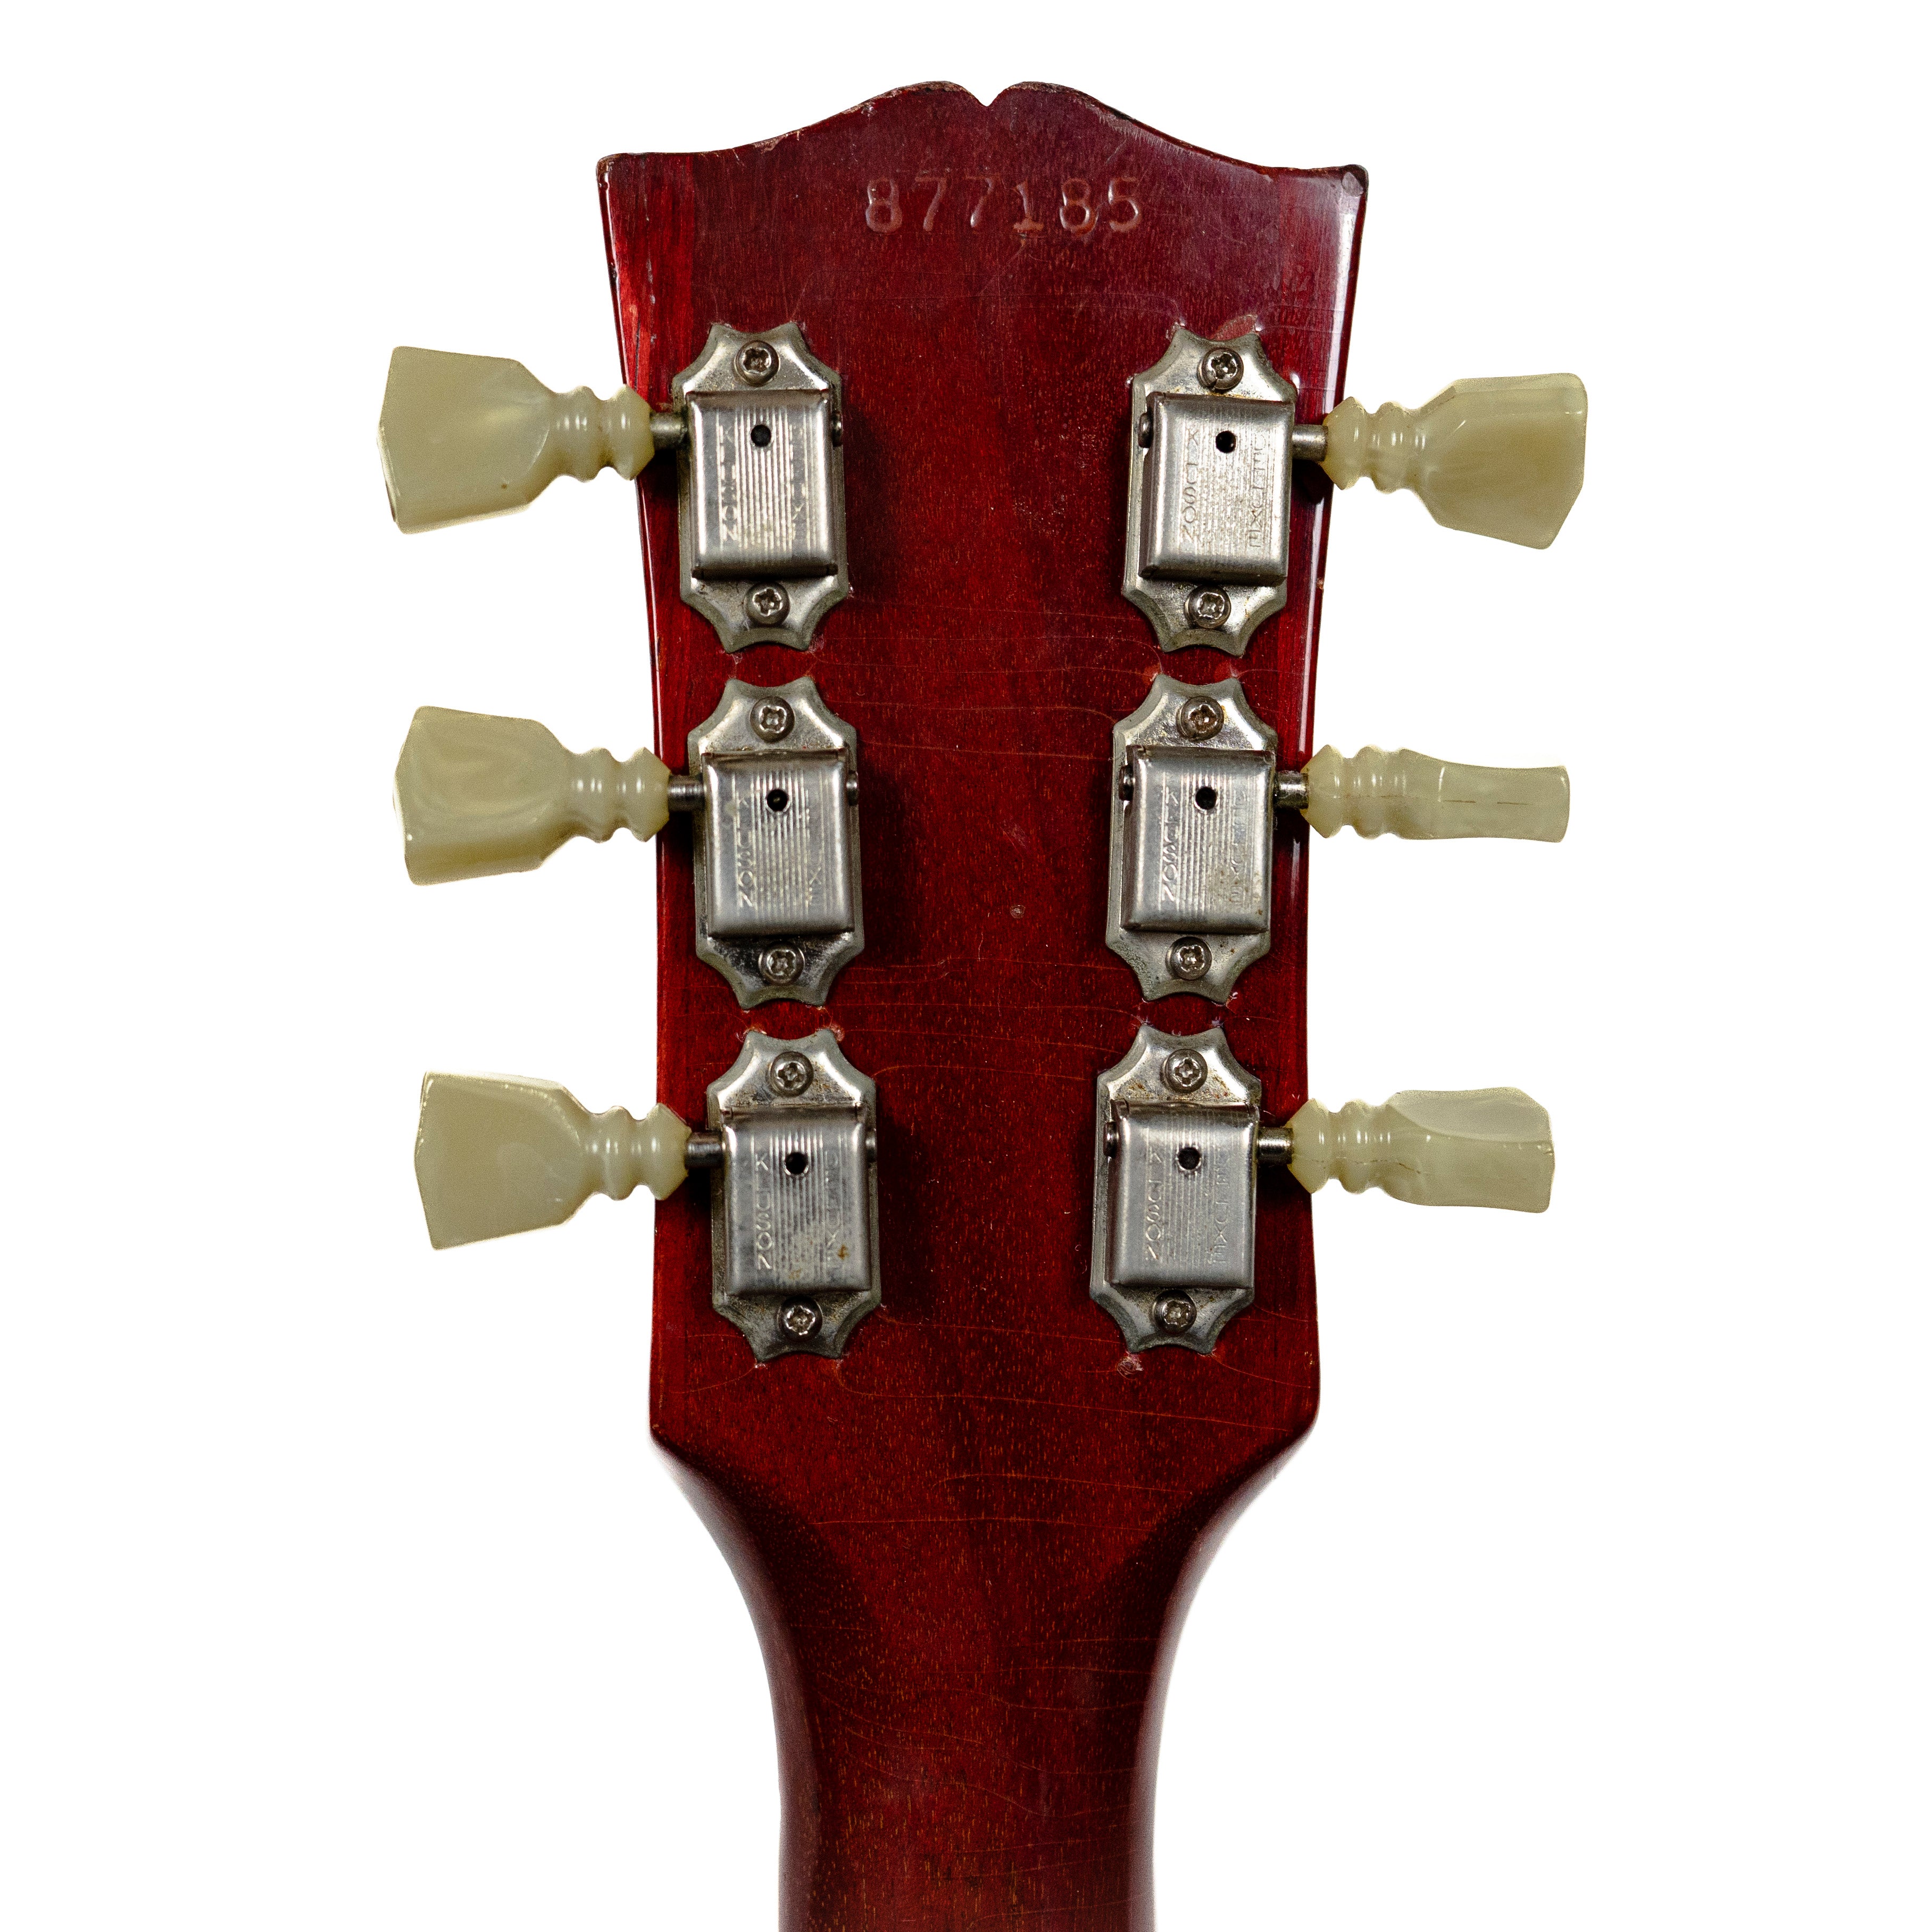 Gibson 1967 ES-335 Cherry